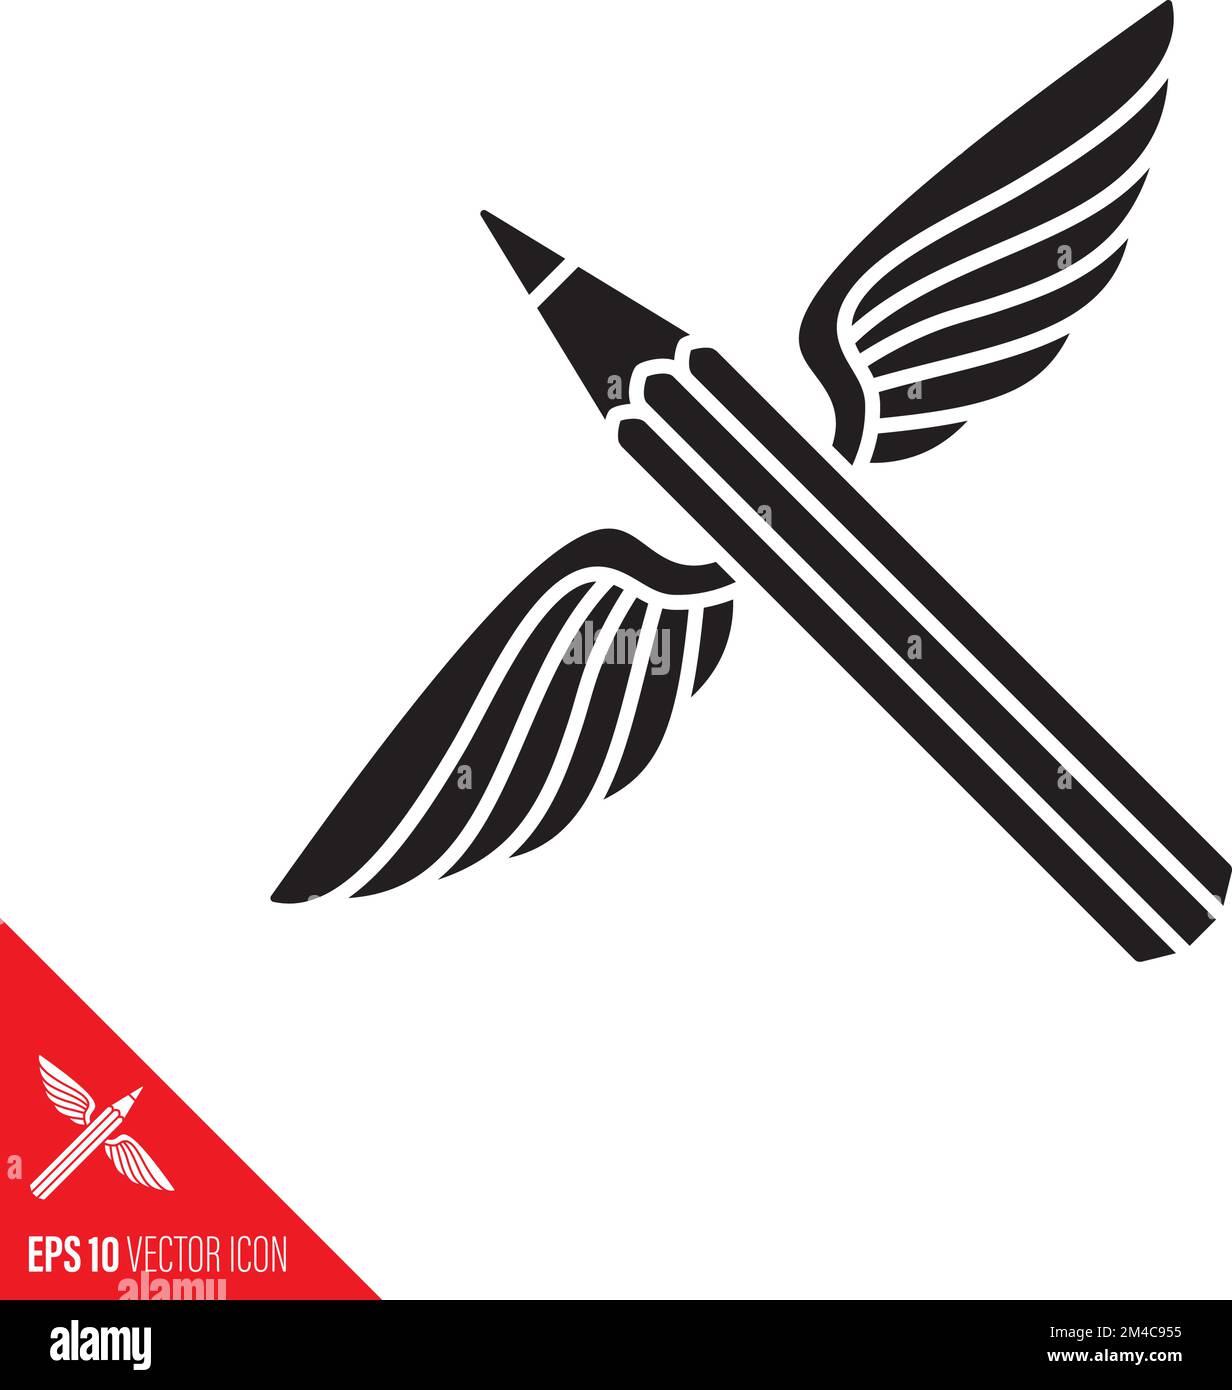 Vektorsymbol für Bleistift mit Flügeln. Poesie, Fantasie und Kreativität begriffliche Glyphe. Symbol Stock Vektor